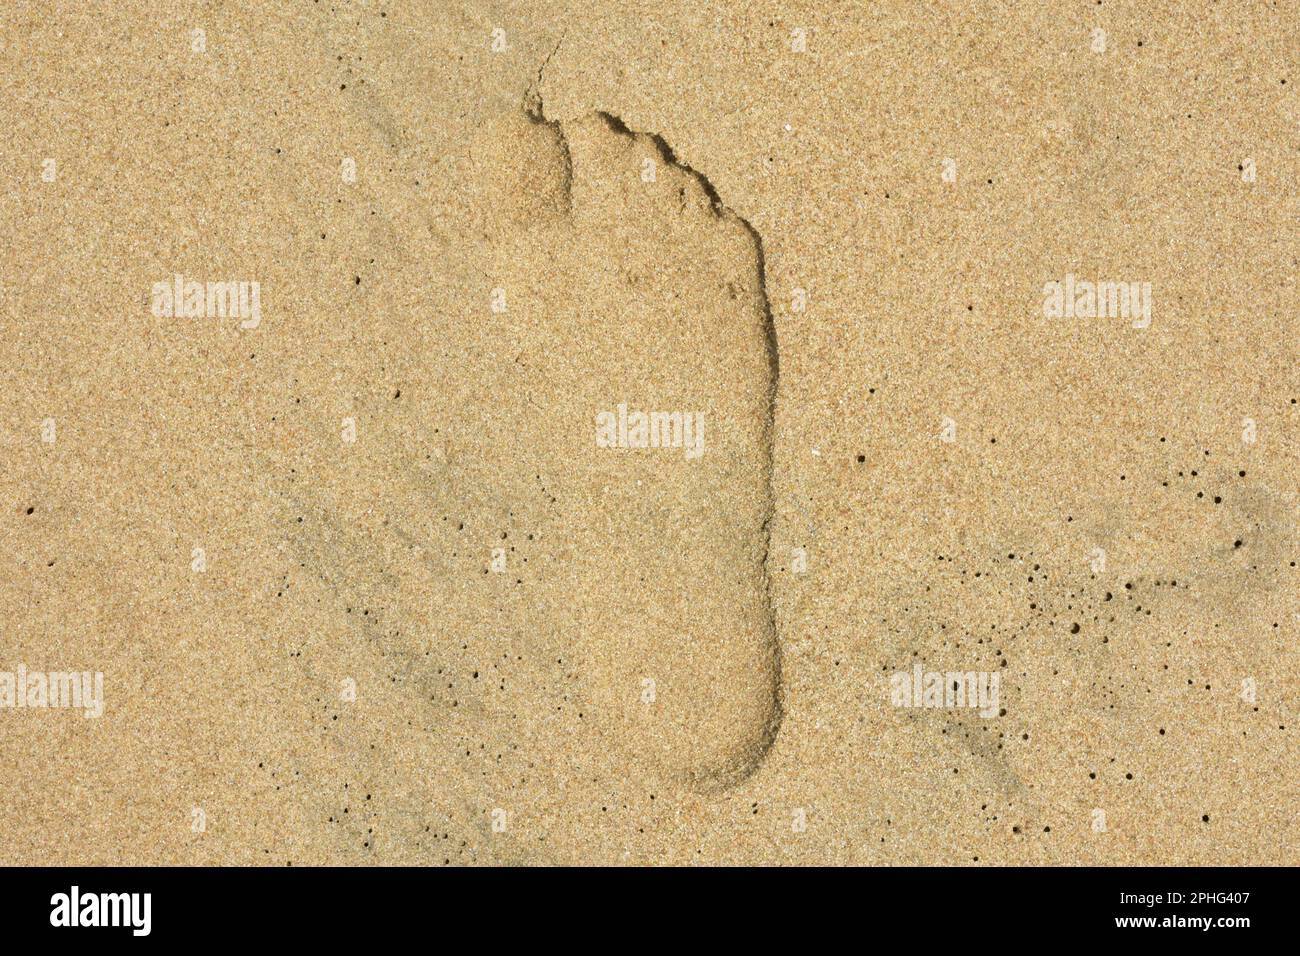 Ein Fußabdruck am Strand. Barfuß in Pondicherry aufgenommen. Stockfoto